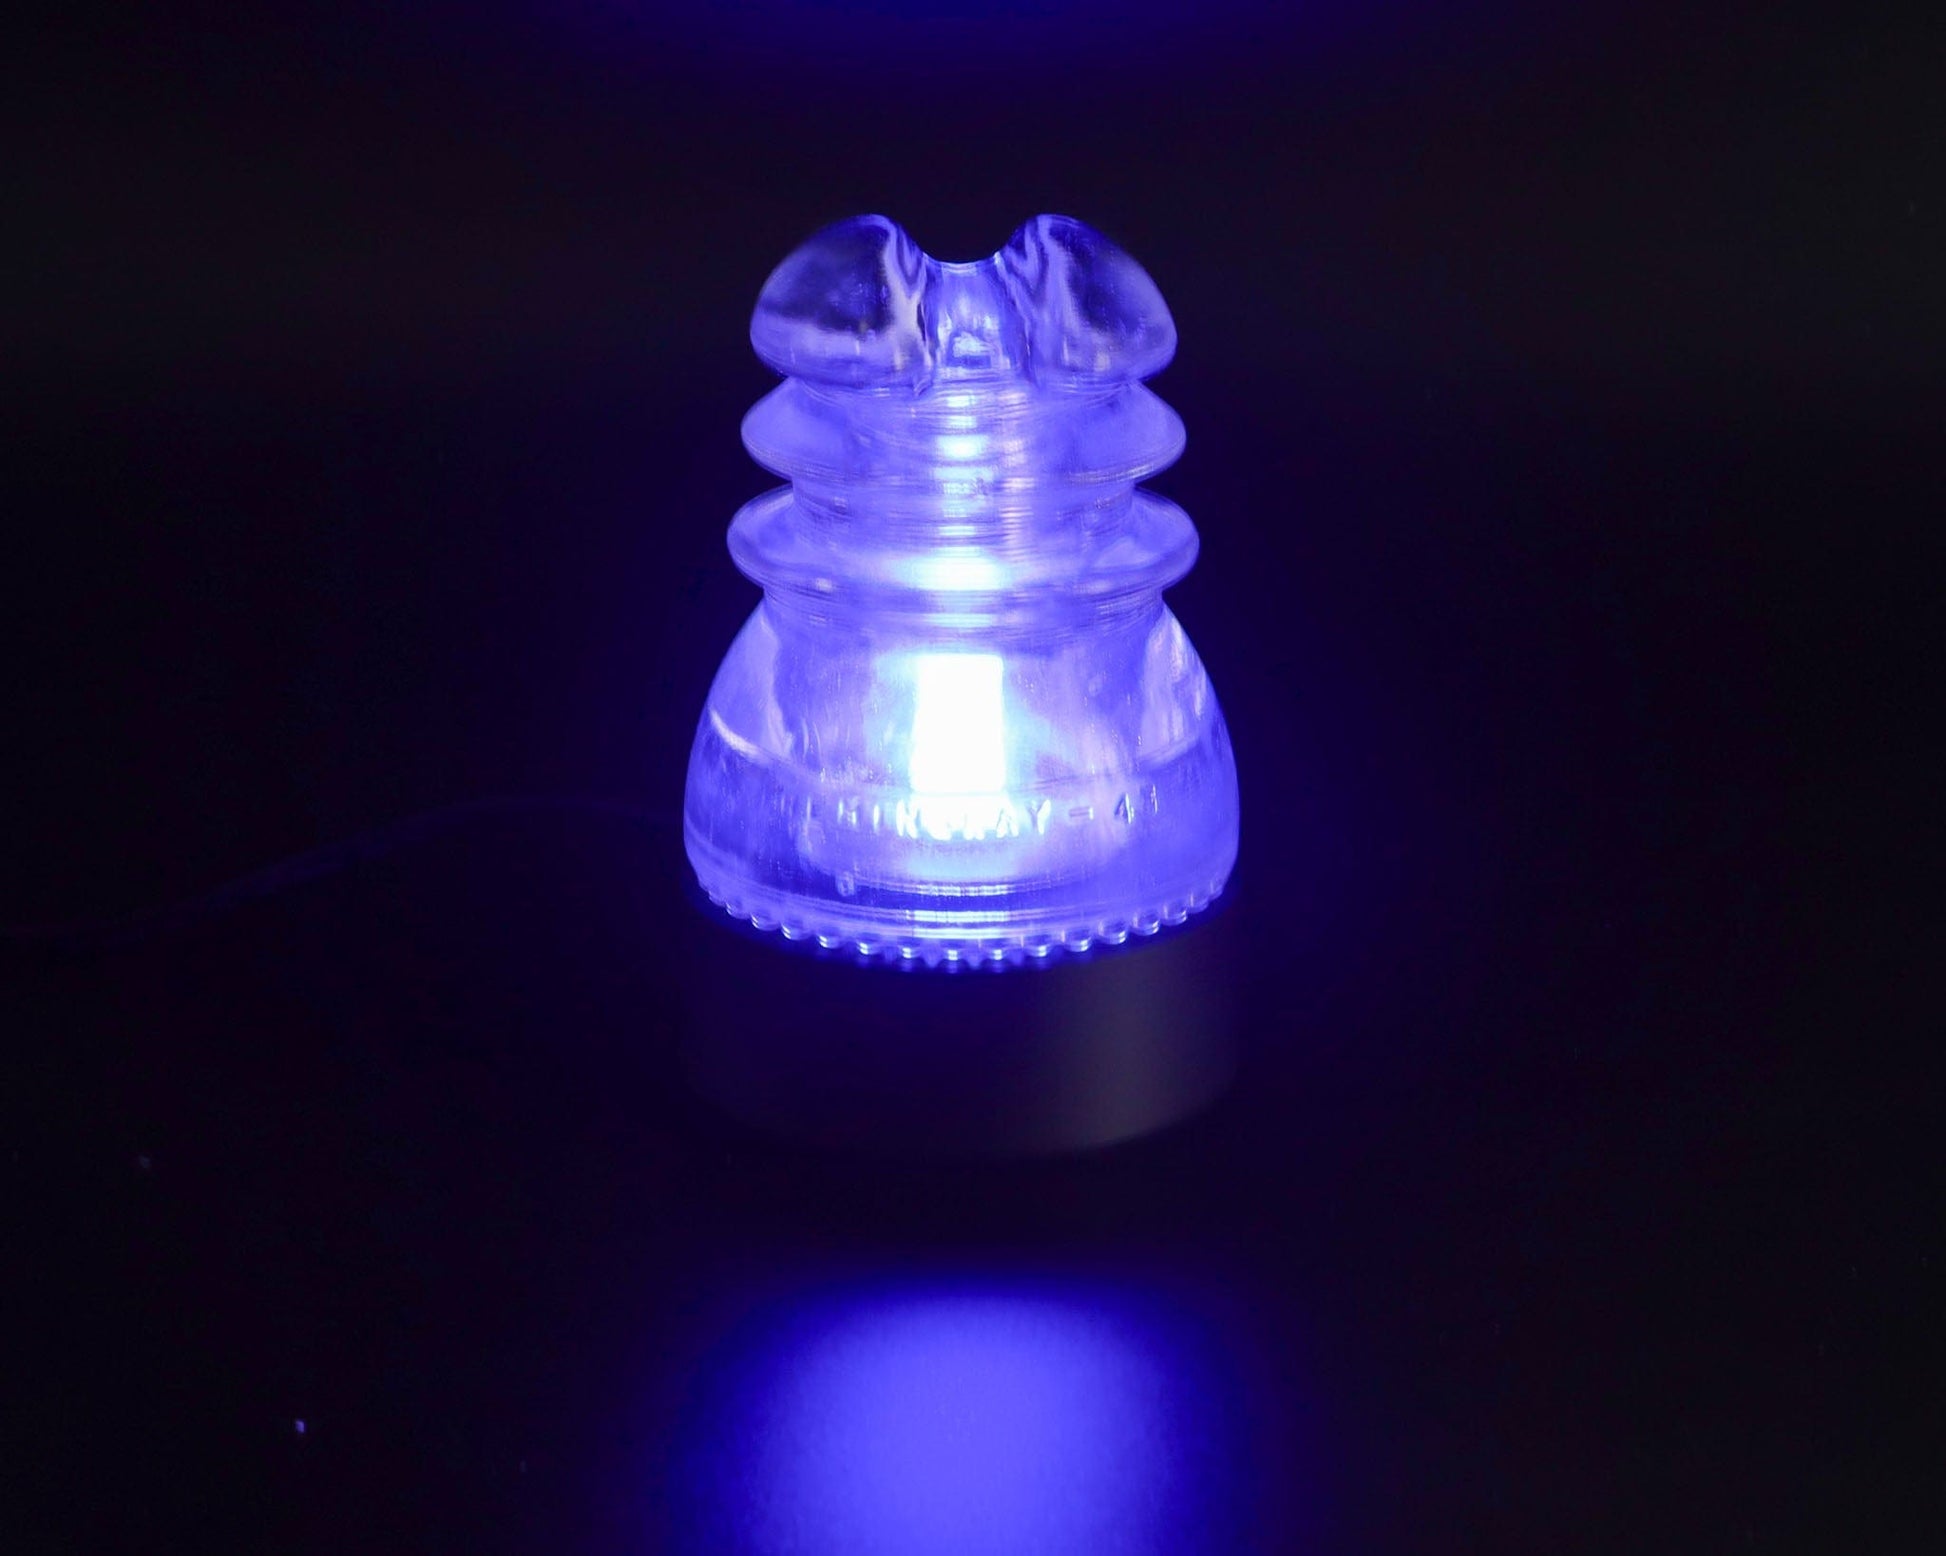 LightAndTimeArt Lamp base Lamp Base for "Hemingray-43" Glass Insulators